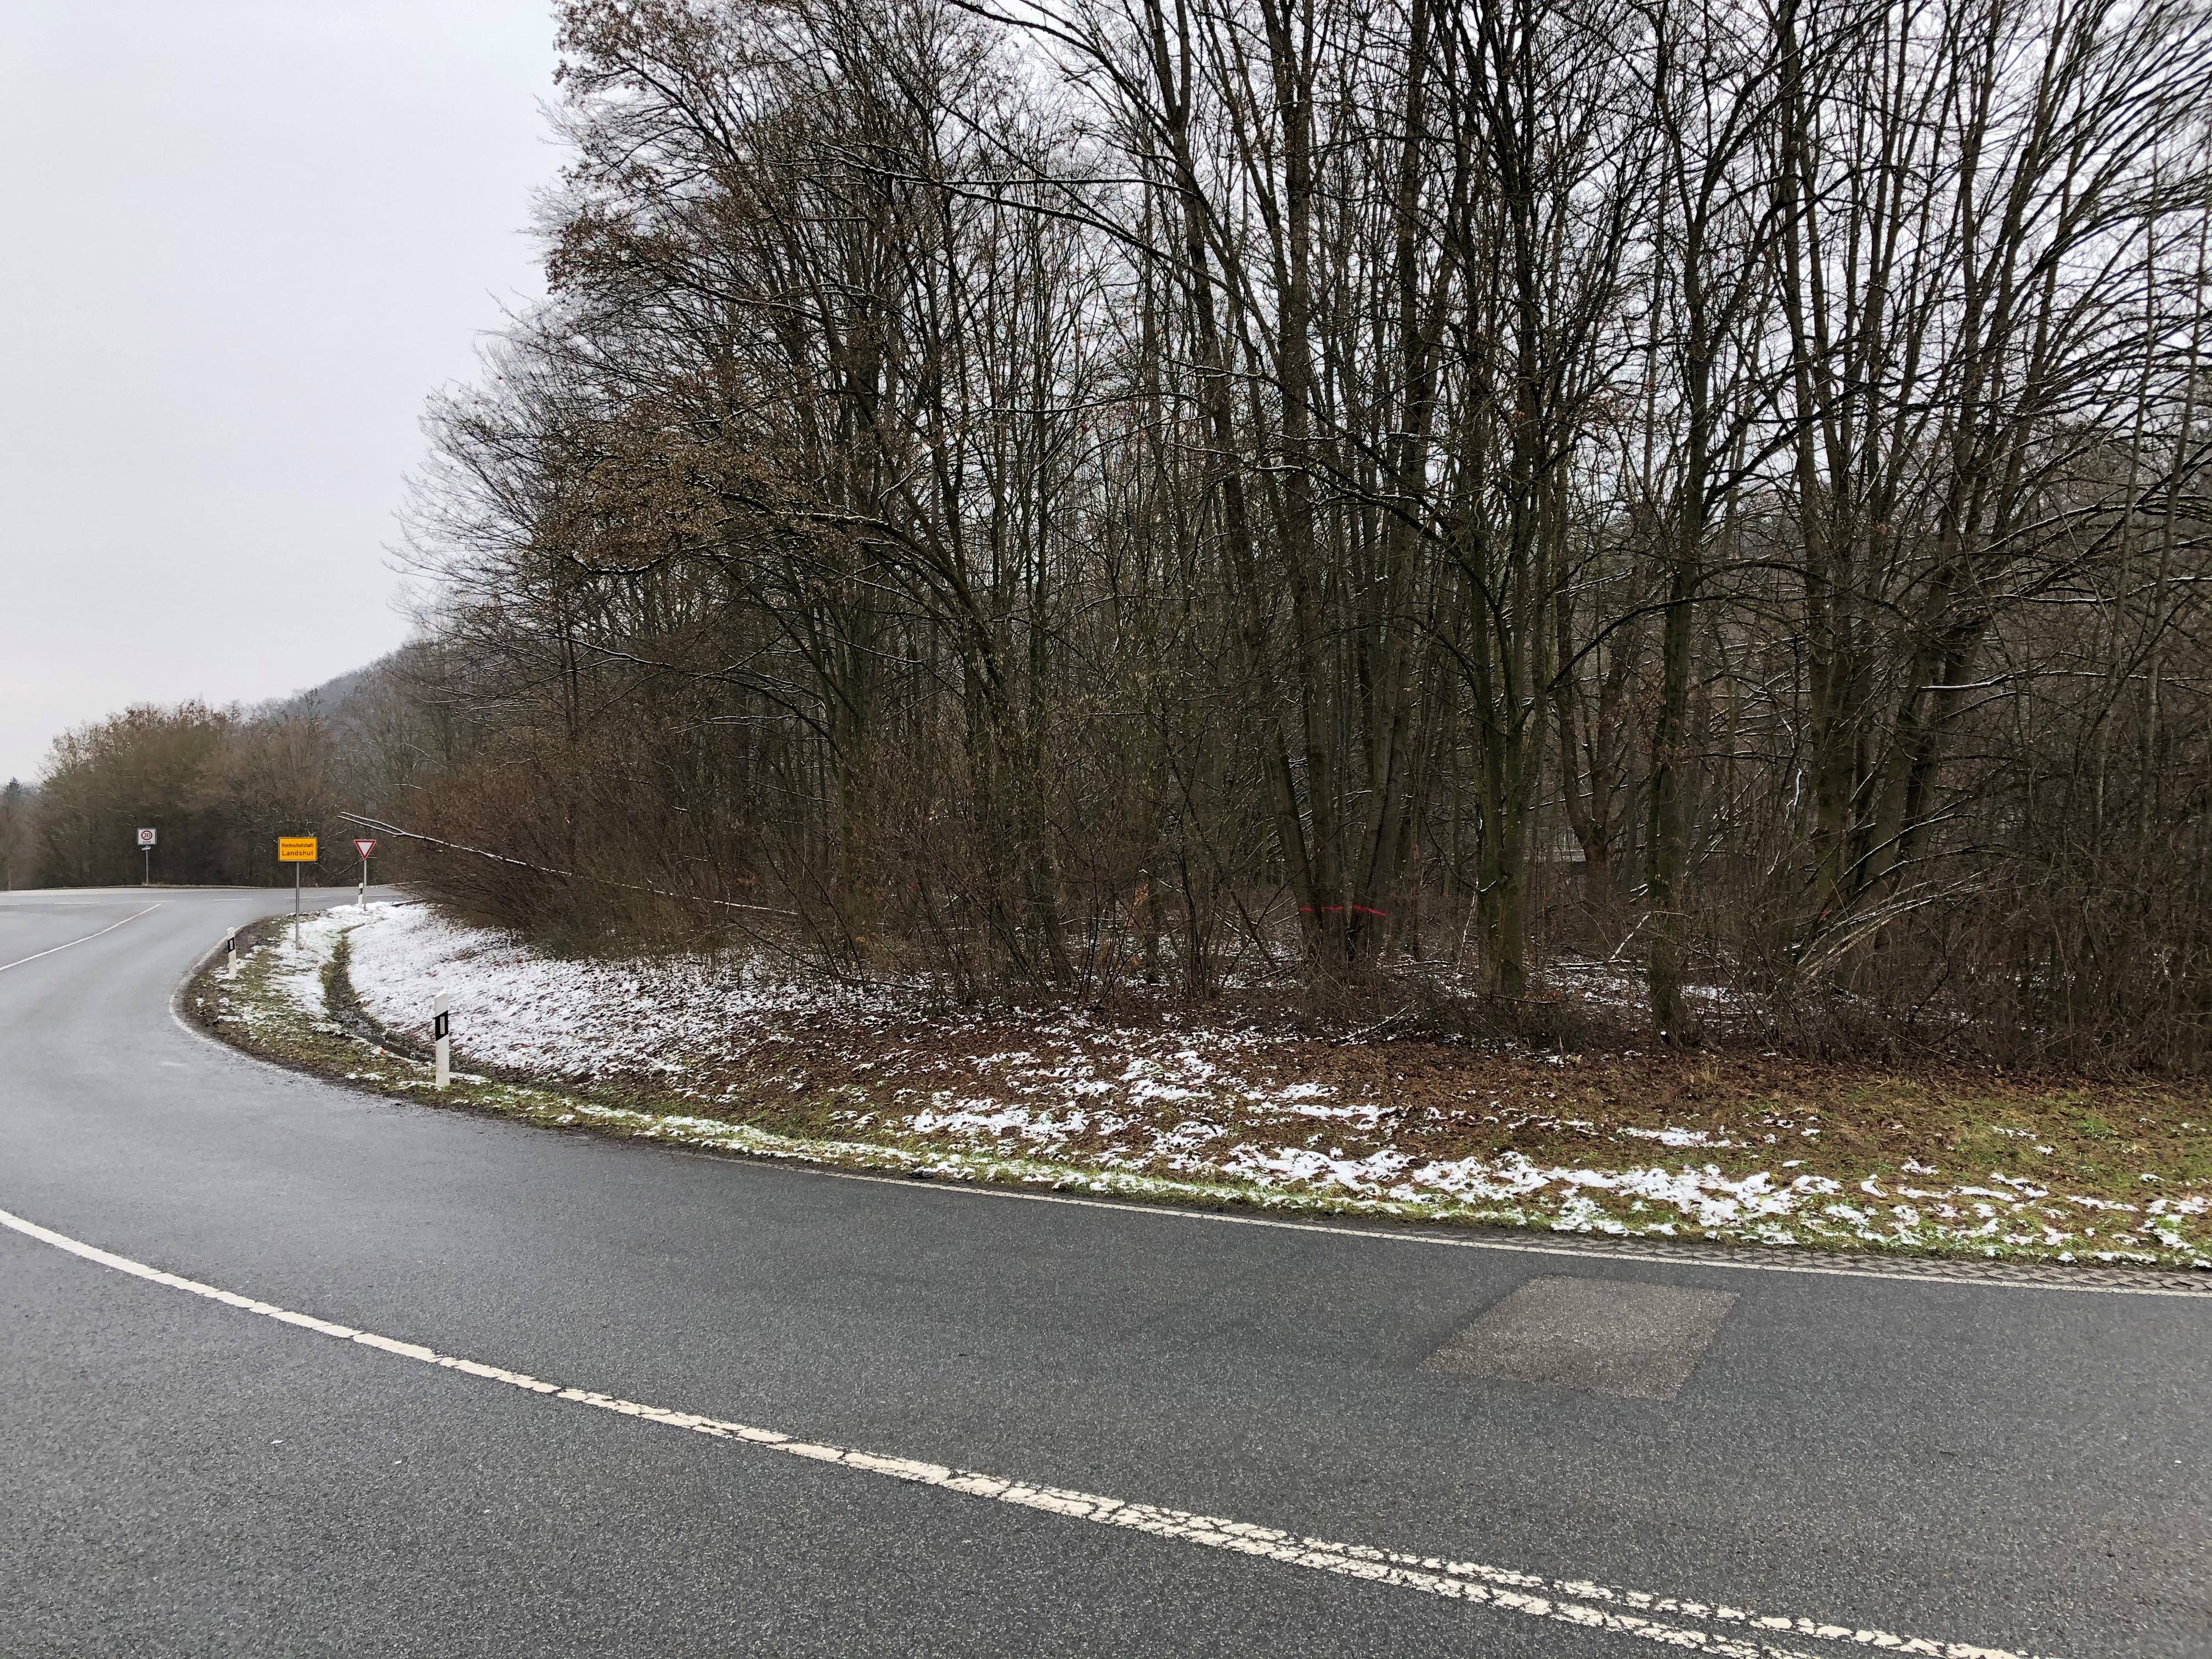 Entlang der B 299 entfernt das Staatliche Bauamt Landshut kommende Woche kranke, abgestorbene oder umgestürzte Bäume.